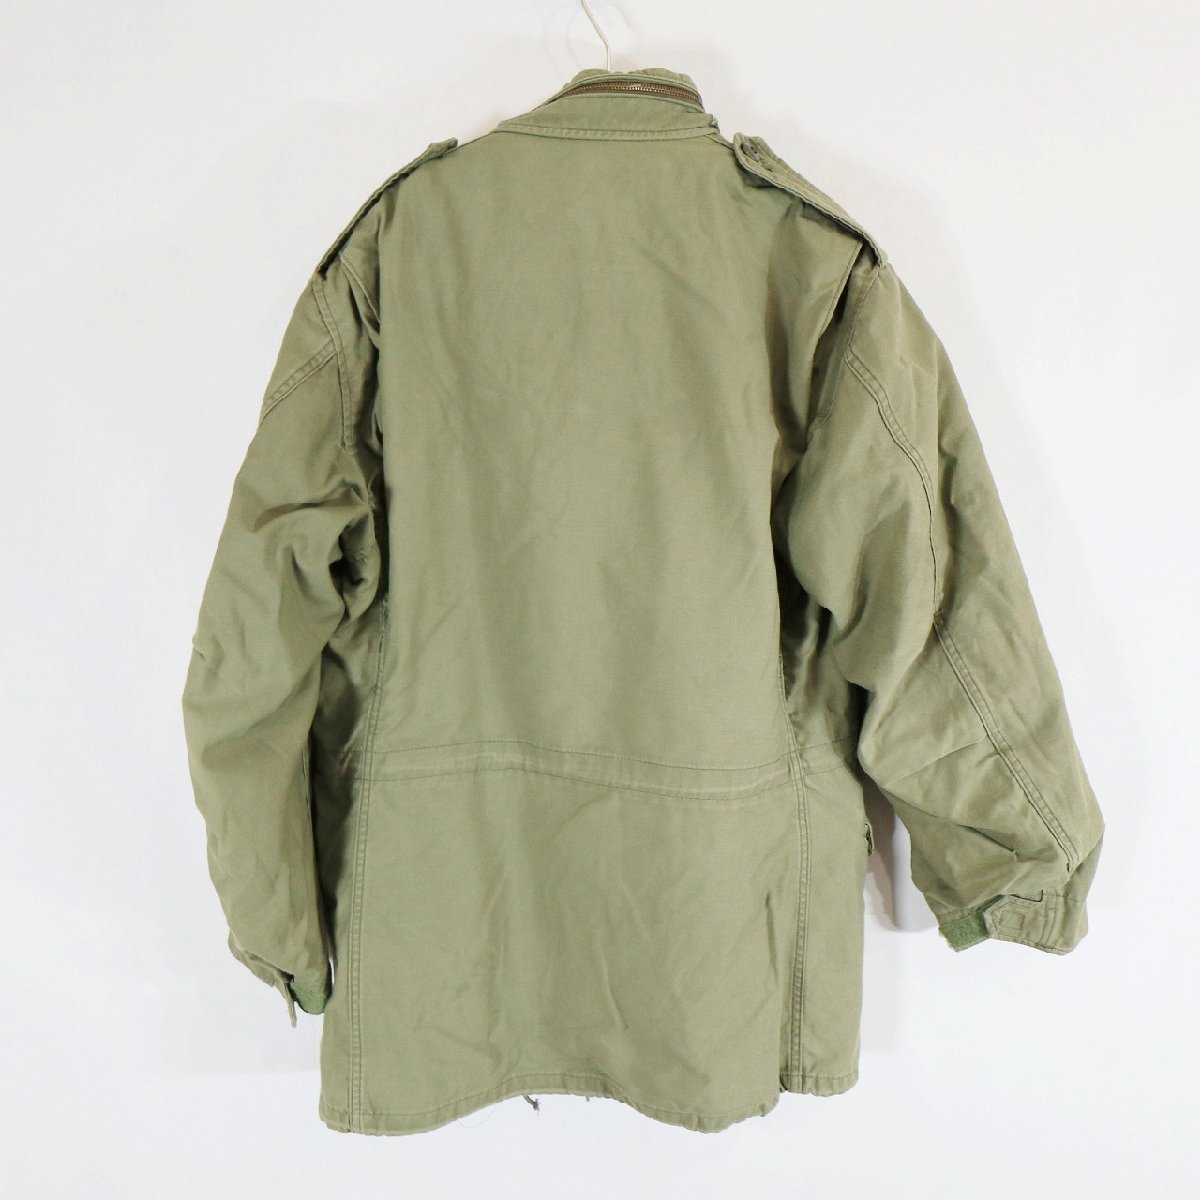 CONDOR 民間品 フィールドジャケット ミリタリー アメリカ軍 軍服 M65タイプ オリーブ ( メンズ Ｍ ) 中古 古着 N4557_画像2